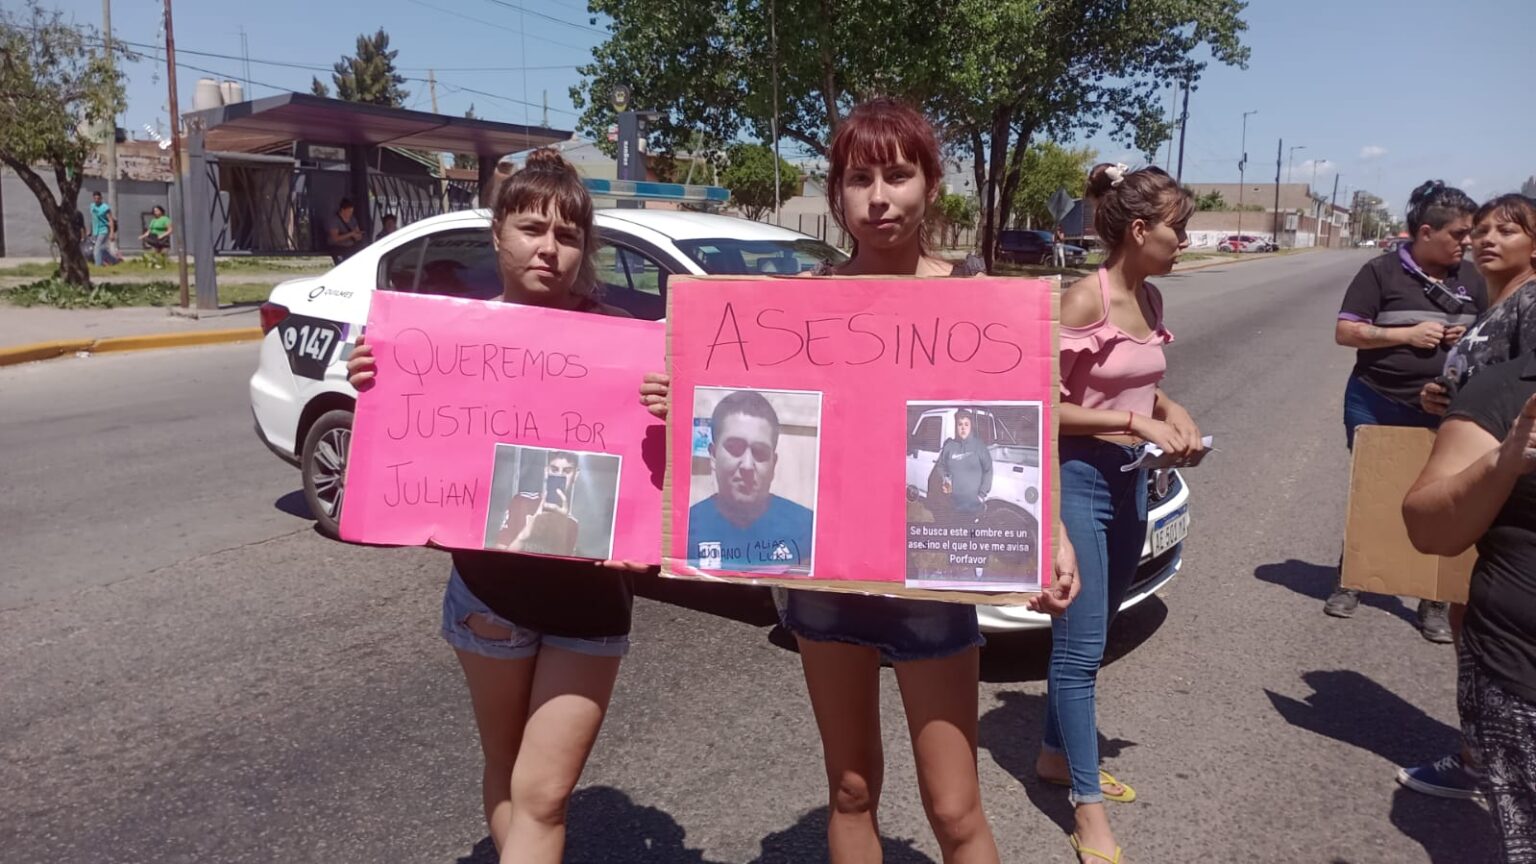 Marcha en reclamo de justicia por joven asesinado en la madrugada de Año Nuevo en La Cañada: “Julián es una víctima inocente”